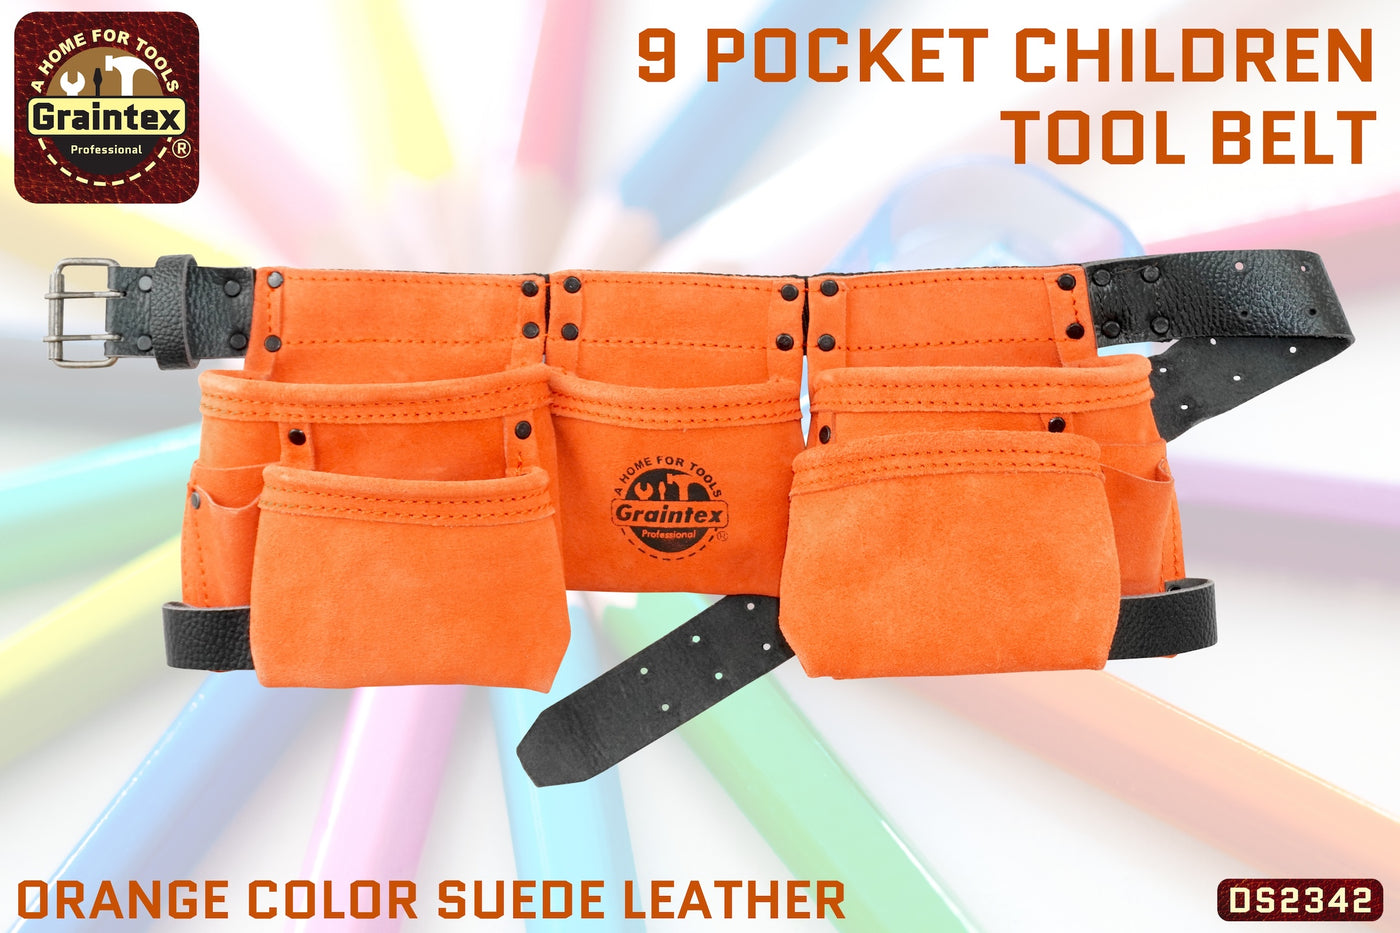 DS2342 :: 9 Pocket Children Tool Belt Orange Color Suede Leather